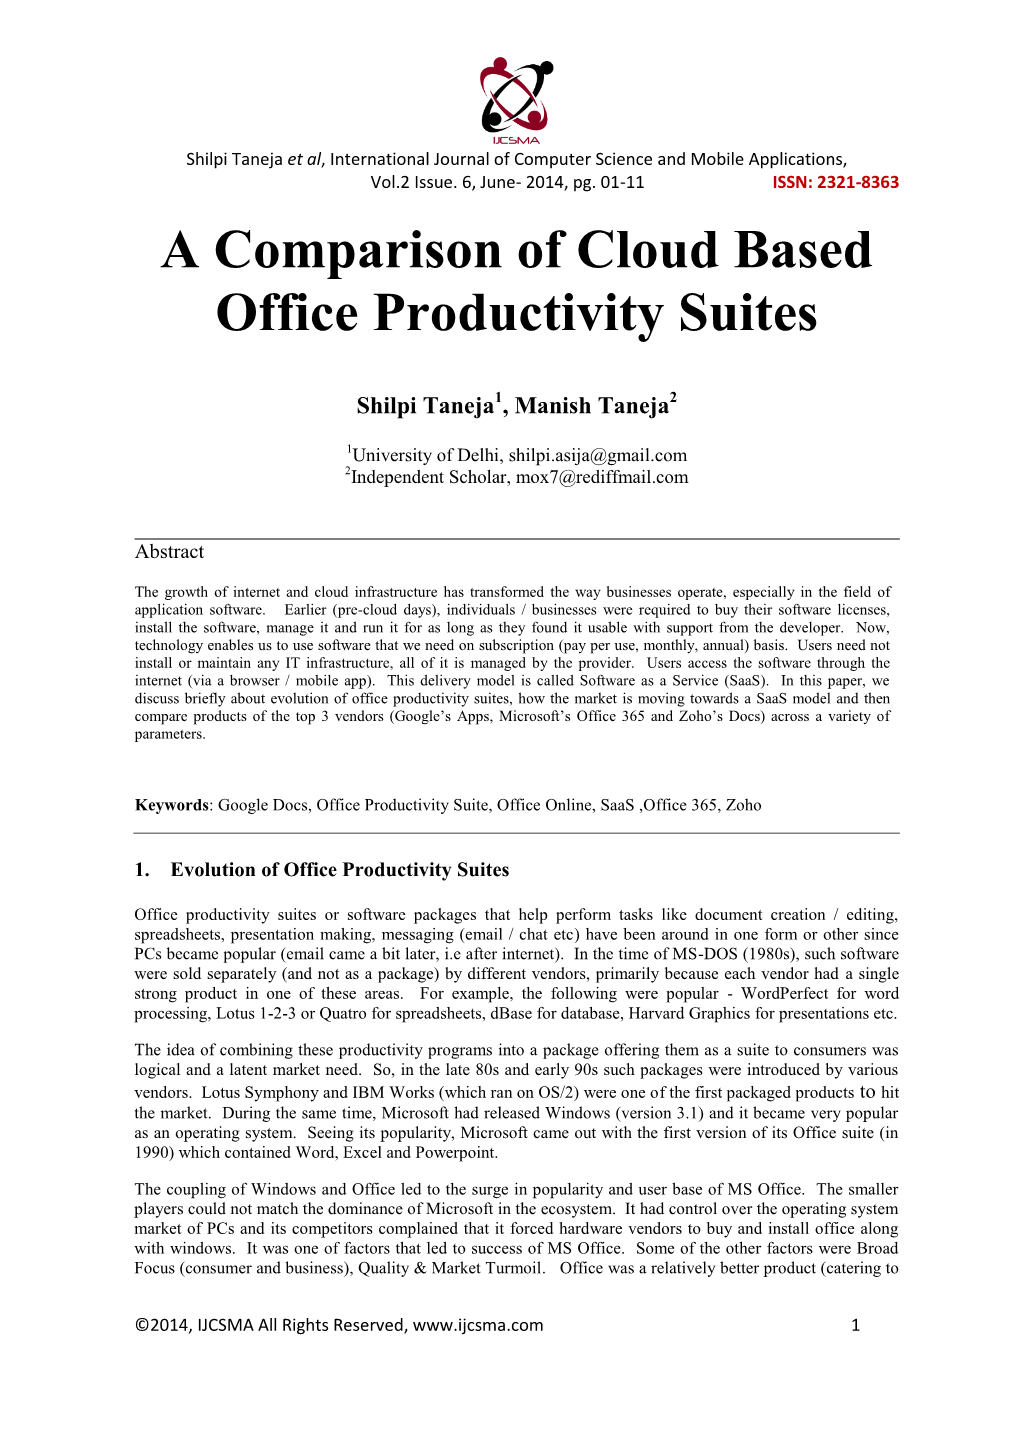 A Comparison of Cloud Based Office Productivity Suites